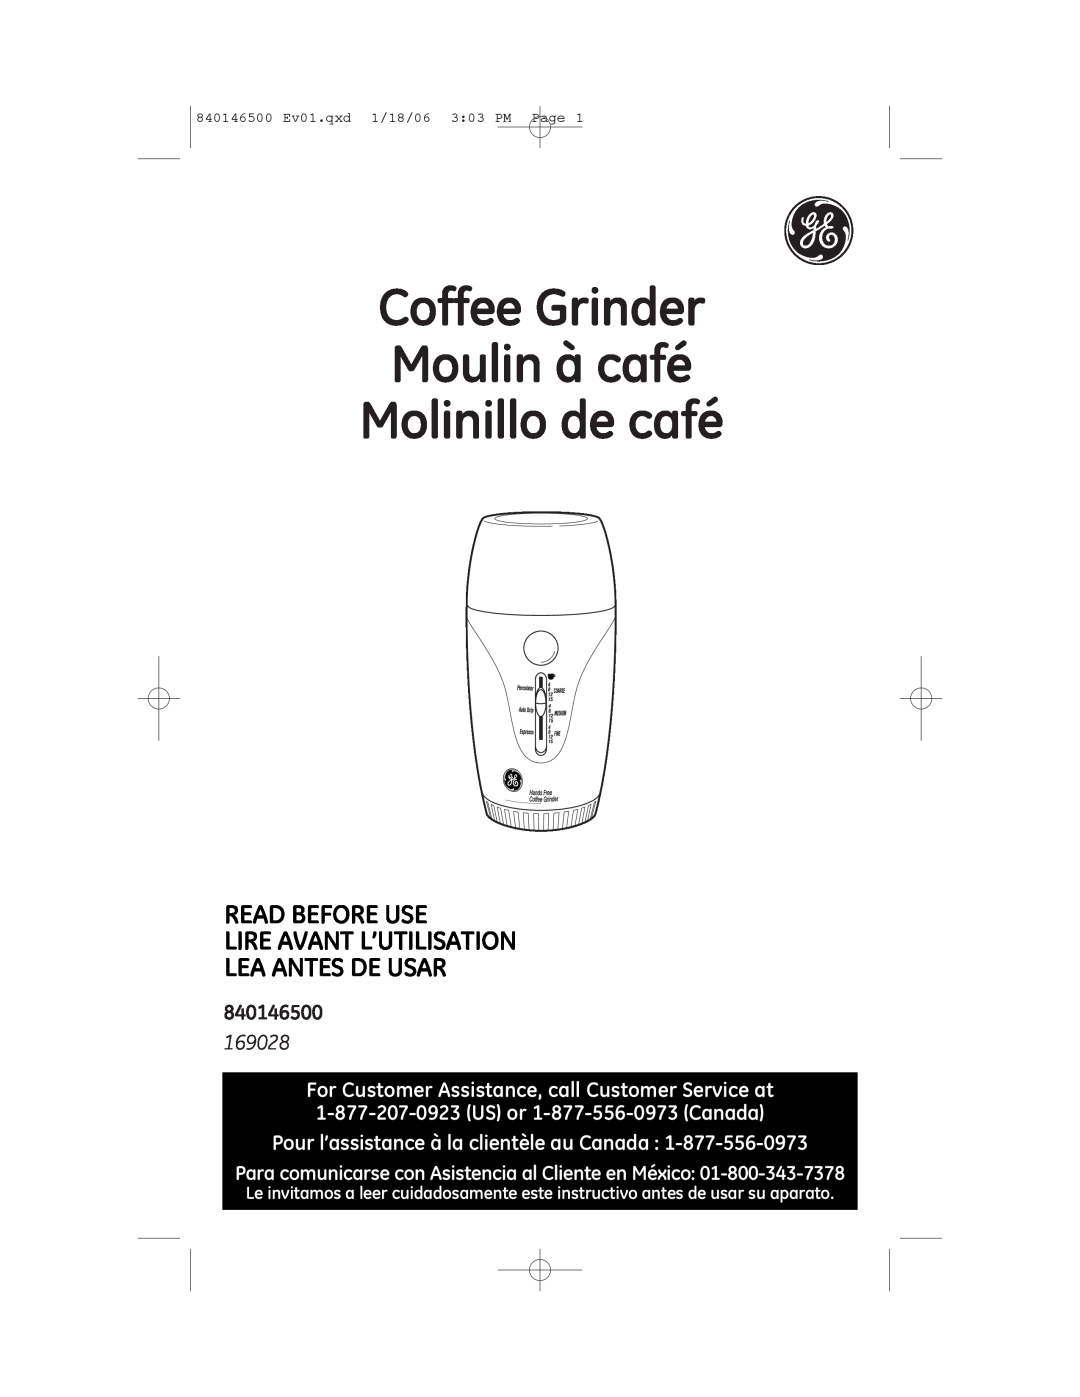 GE 840146500 manual Coffee Grinder Moulin à café Molinillo de café, 169028, Pour l’assistance à la clientèle au Canada 